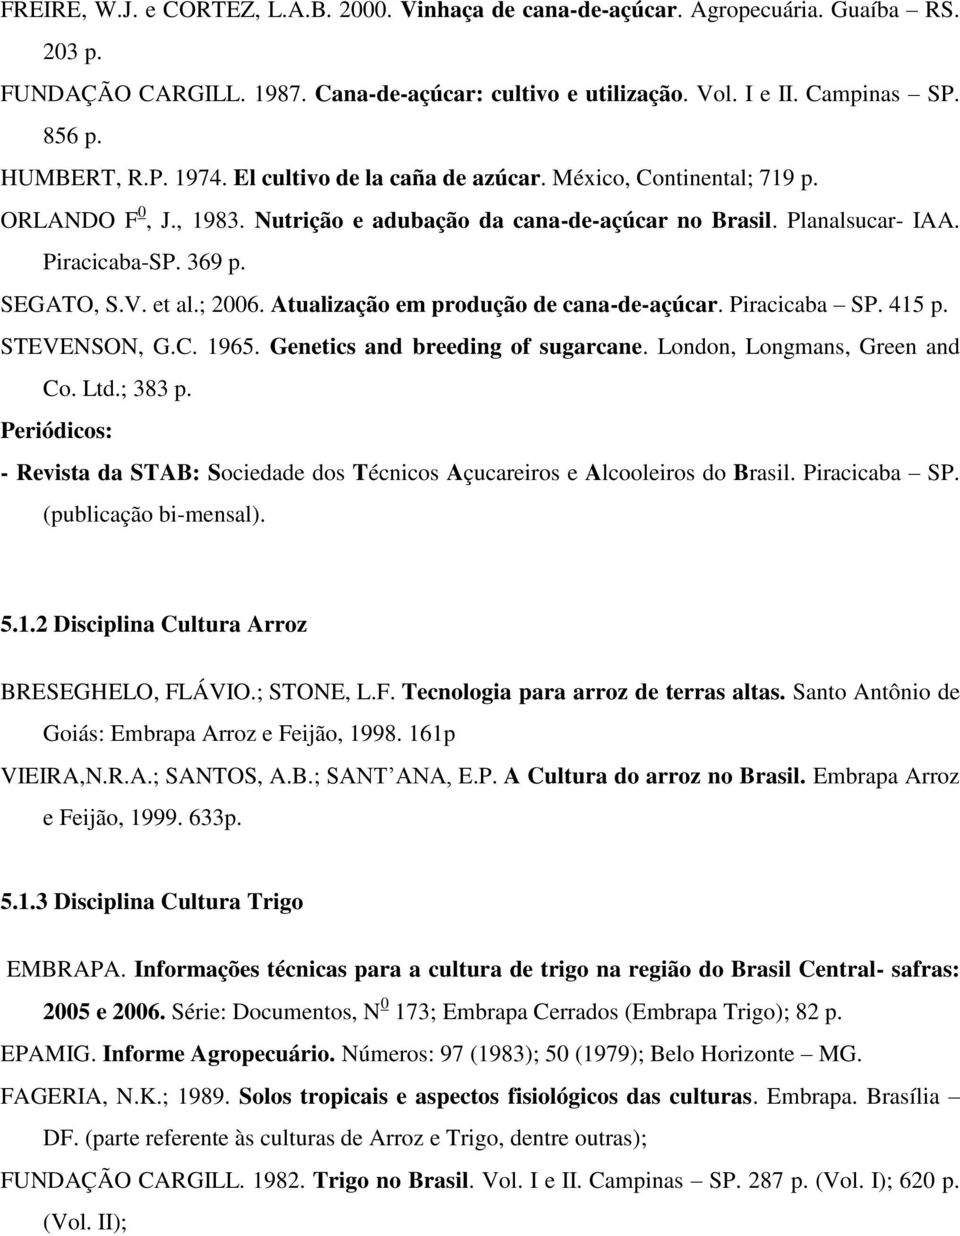 SEGATO, S.V. et al.; 2006. Atualização em produção de cana-de-açúcar. Piracicaba SP. 415 p. STEVENSON, G.C. 1965. Genetics and breeding of sugarcane. London, Longmans, Green and Co. Ltd.; 383 p.